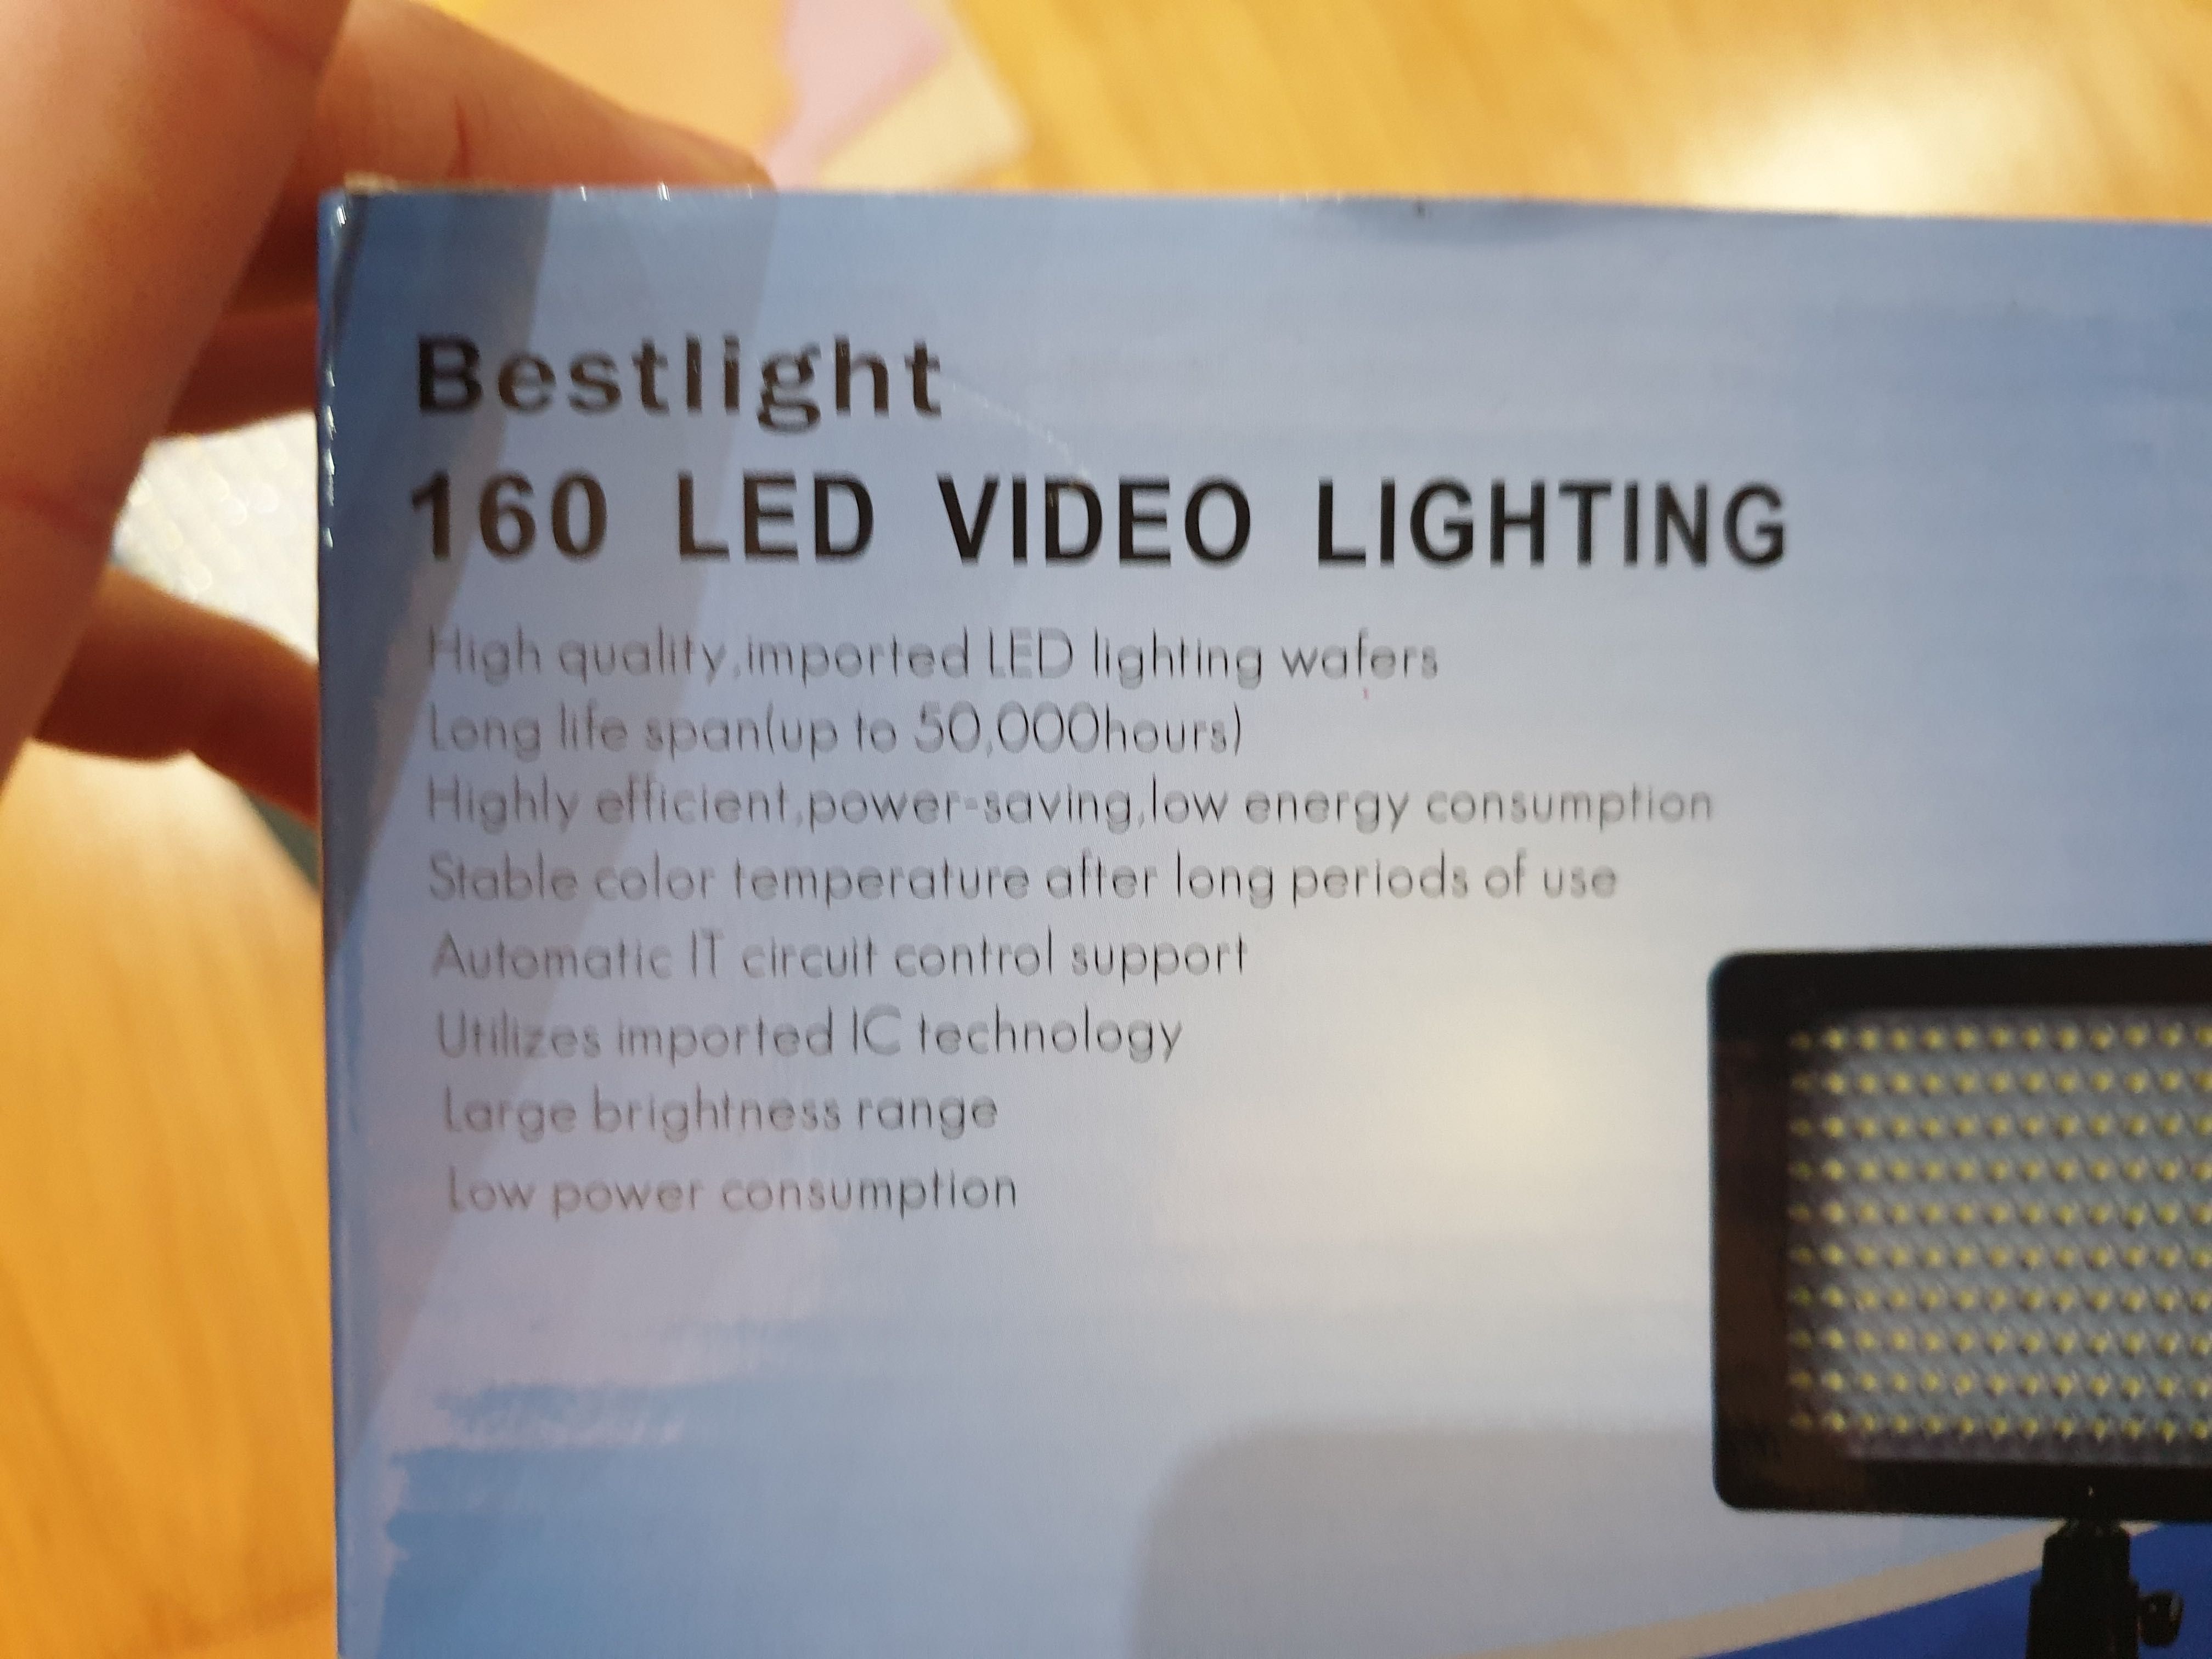 Iluminação fotografia - 160 LED